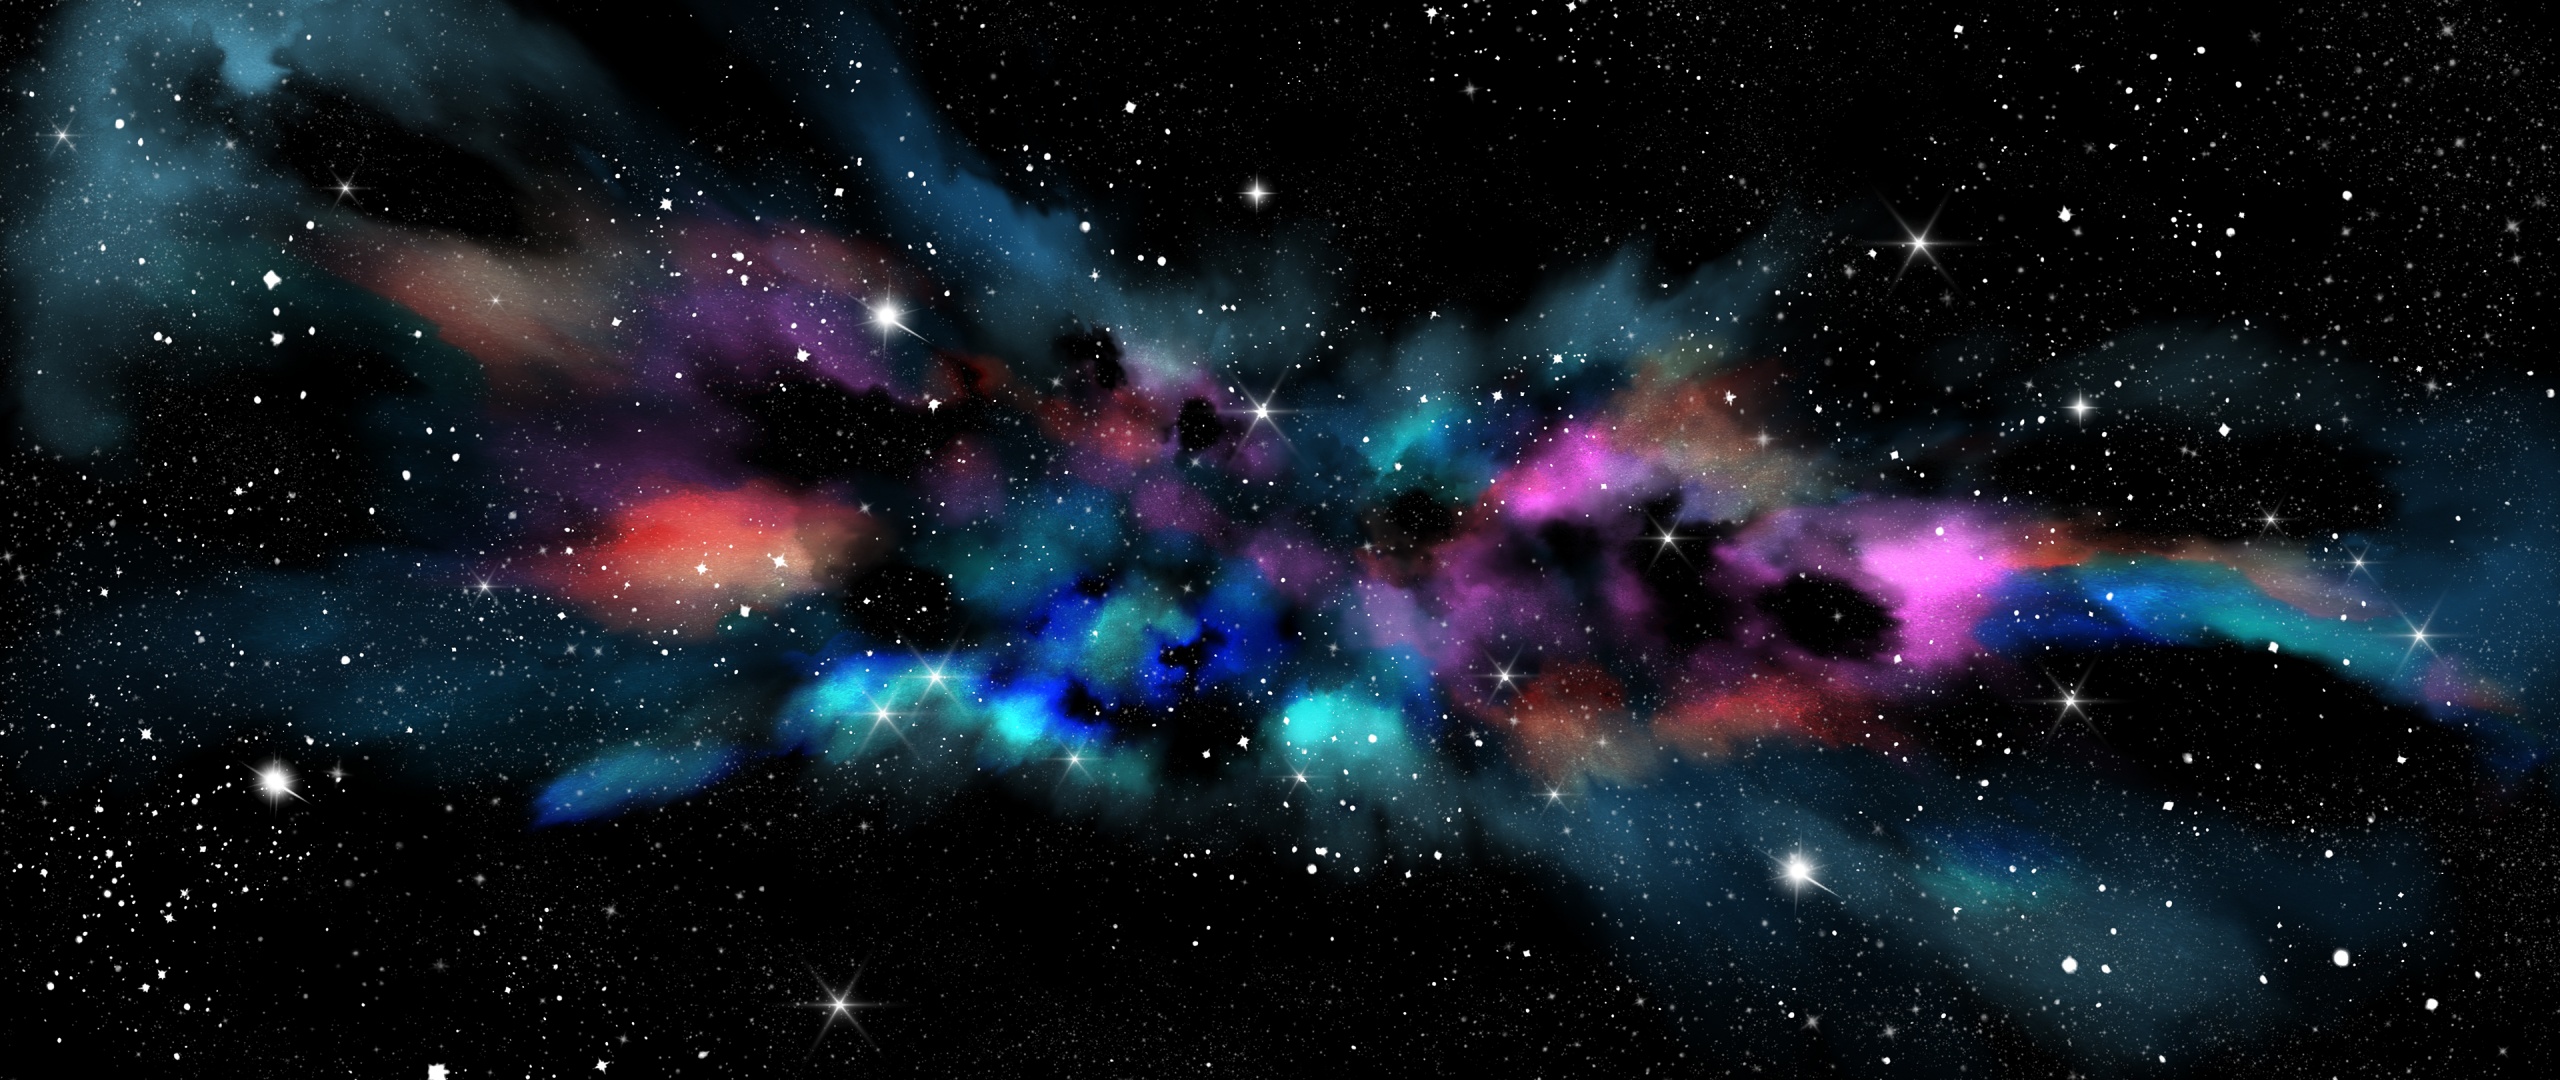 Dải ngân hà: Sự kì vĩ của dải ngân hà được thể hiện rõ ràng trong những hình ảnh độc đáo này. Dừng lại để chiêm ngưỡng những khối sao đầy mê hoặc và hiện tượng ánh sáng đầy màu sắc trong không gian rộng lớn. Chắc chắn bạn sẽ bị cuốn hút vào vẻ đẹp đầy bí ẩn của dải ngân hà.